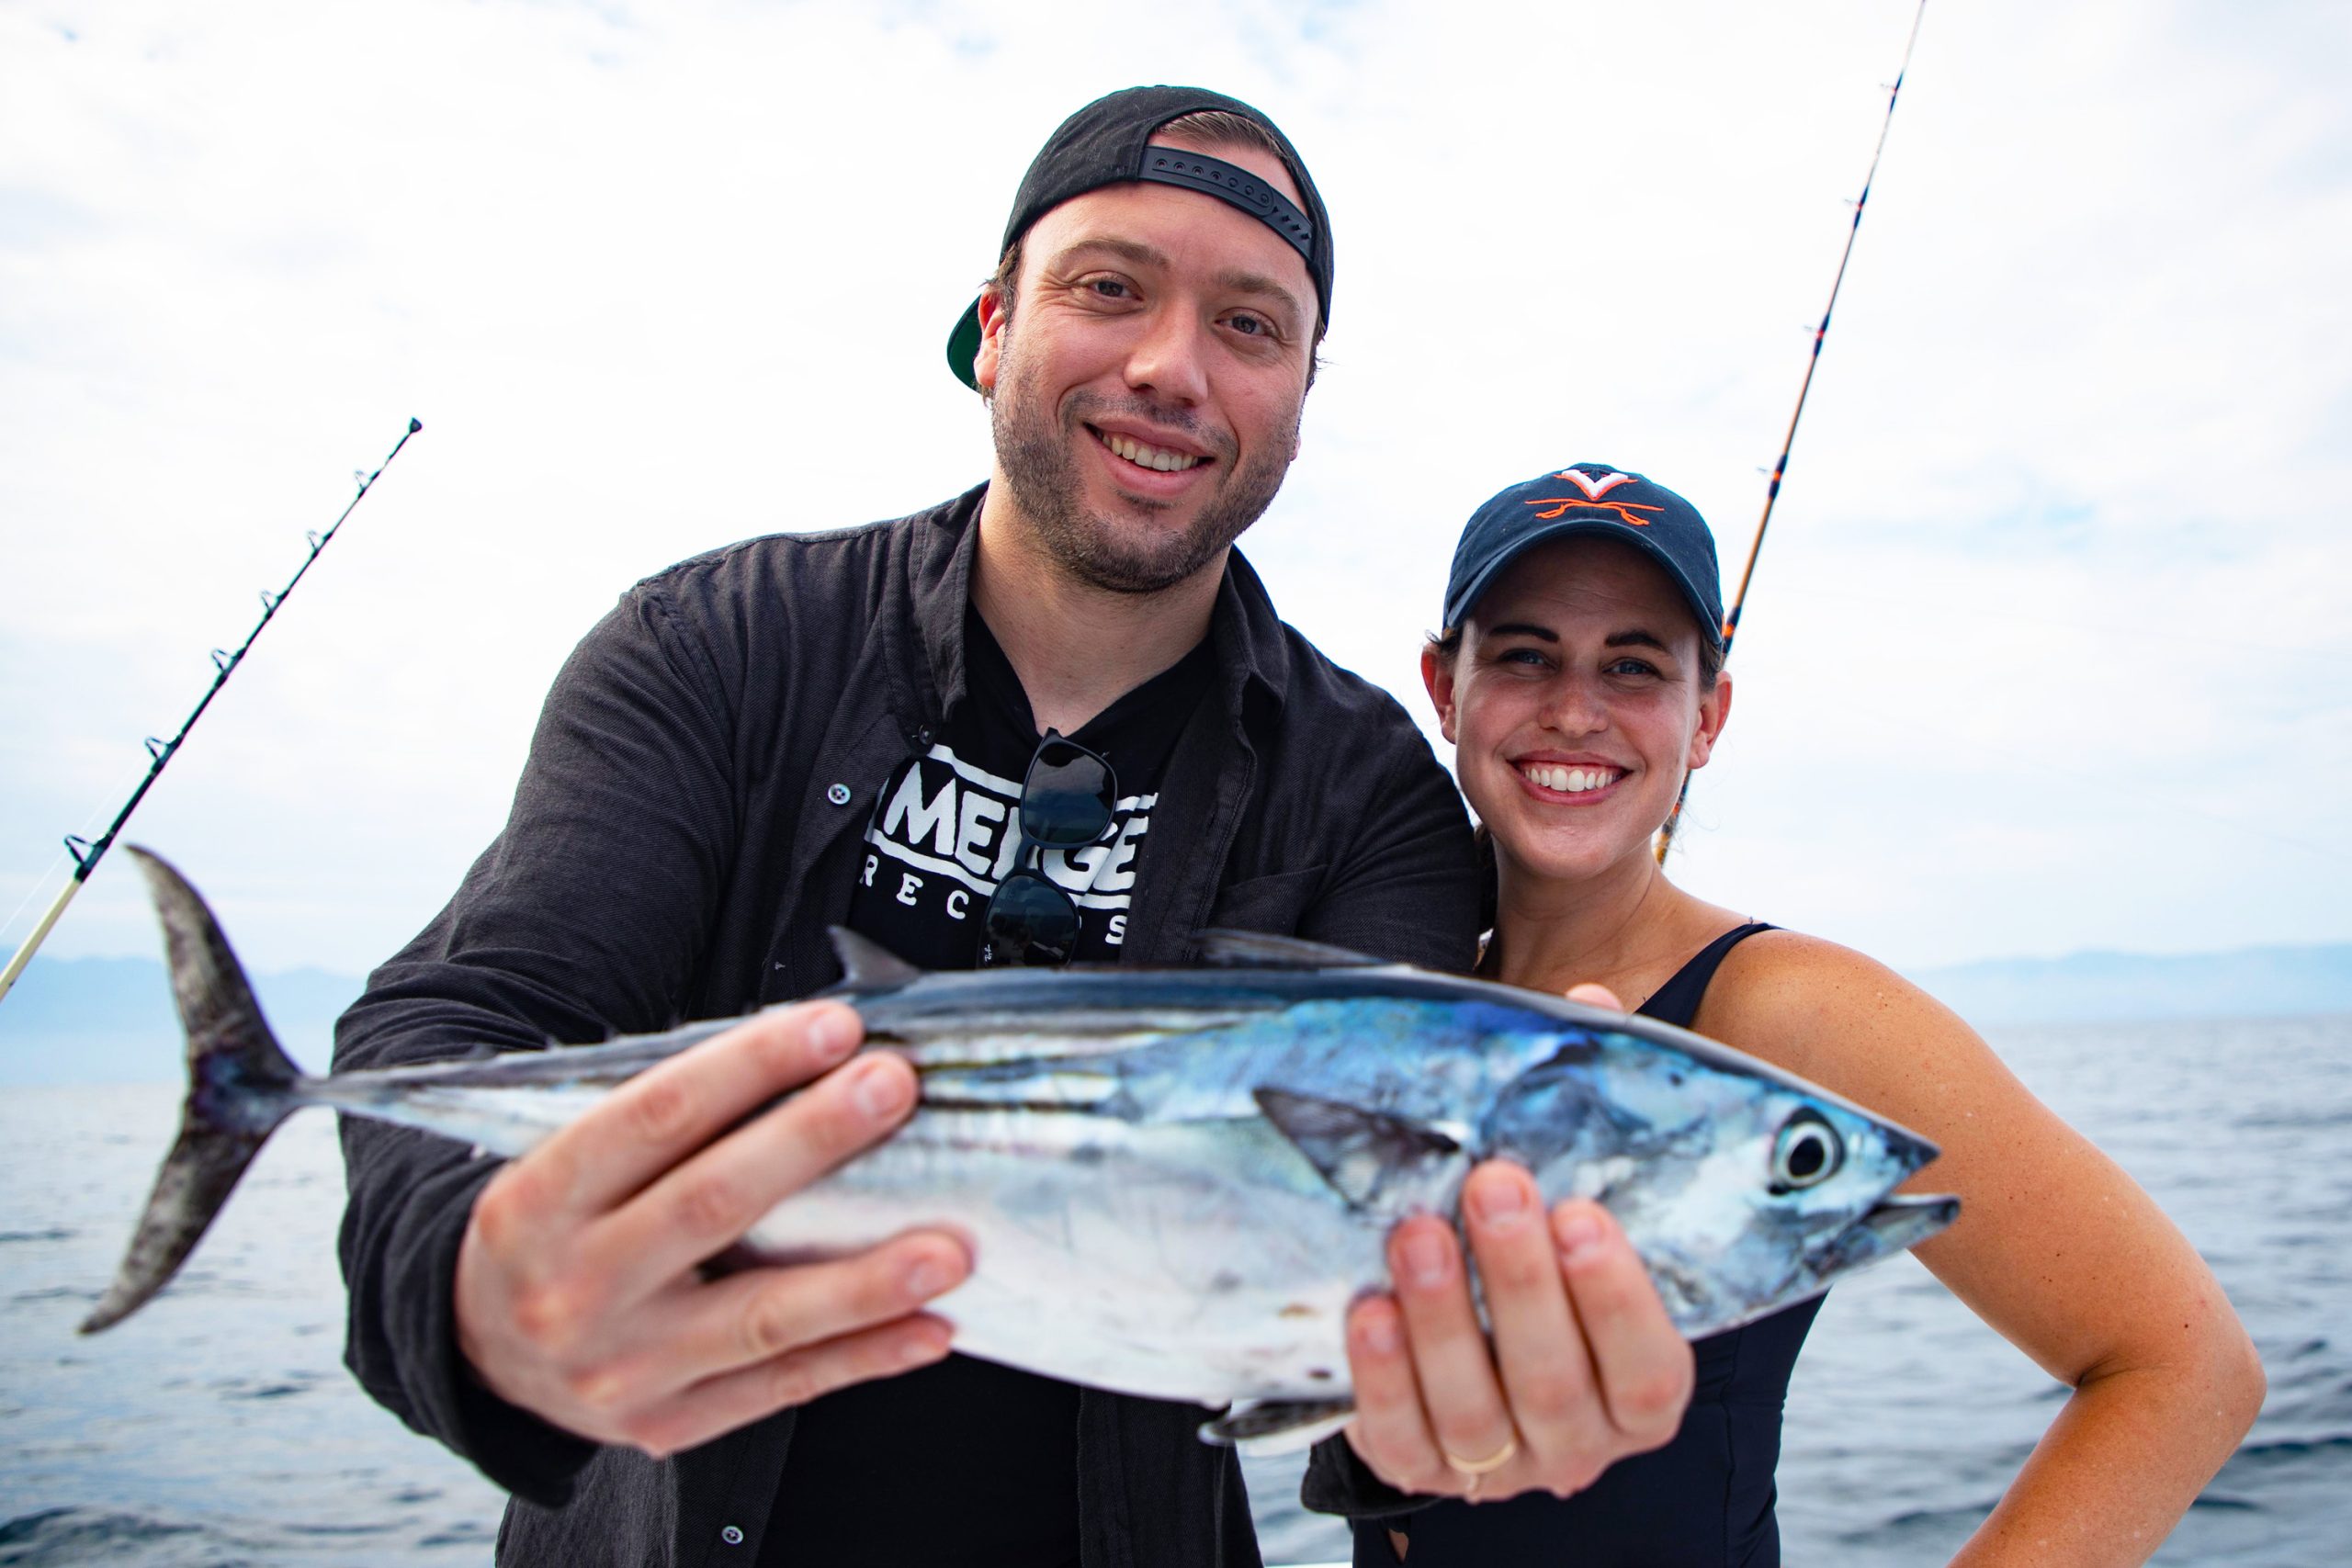 ¡Prepárate para lanzar tus líneas y explorar nuevas experiencias en la pesca!